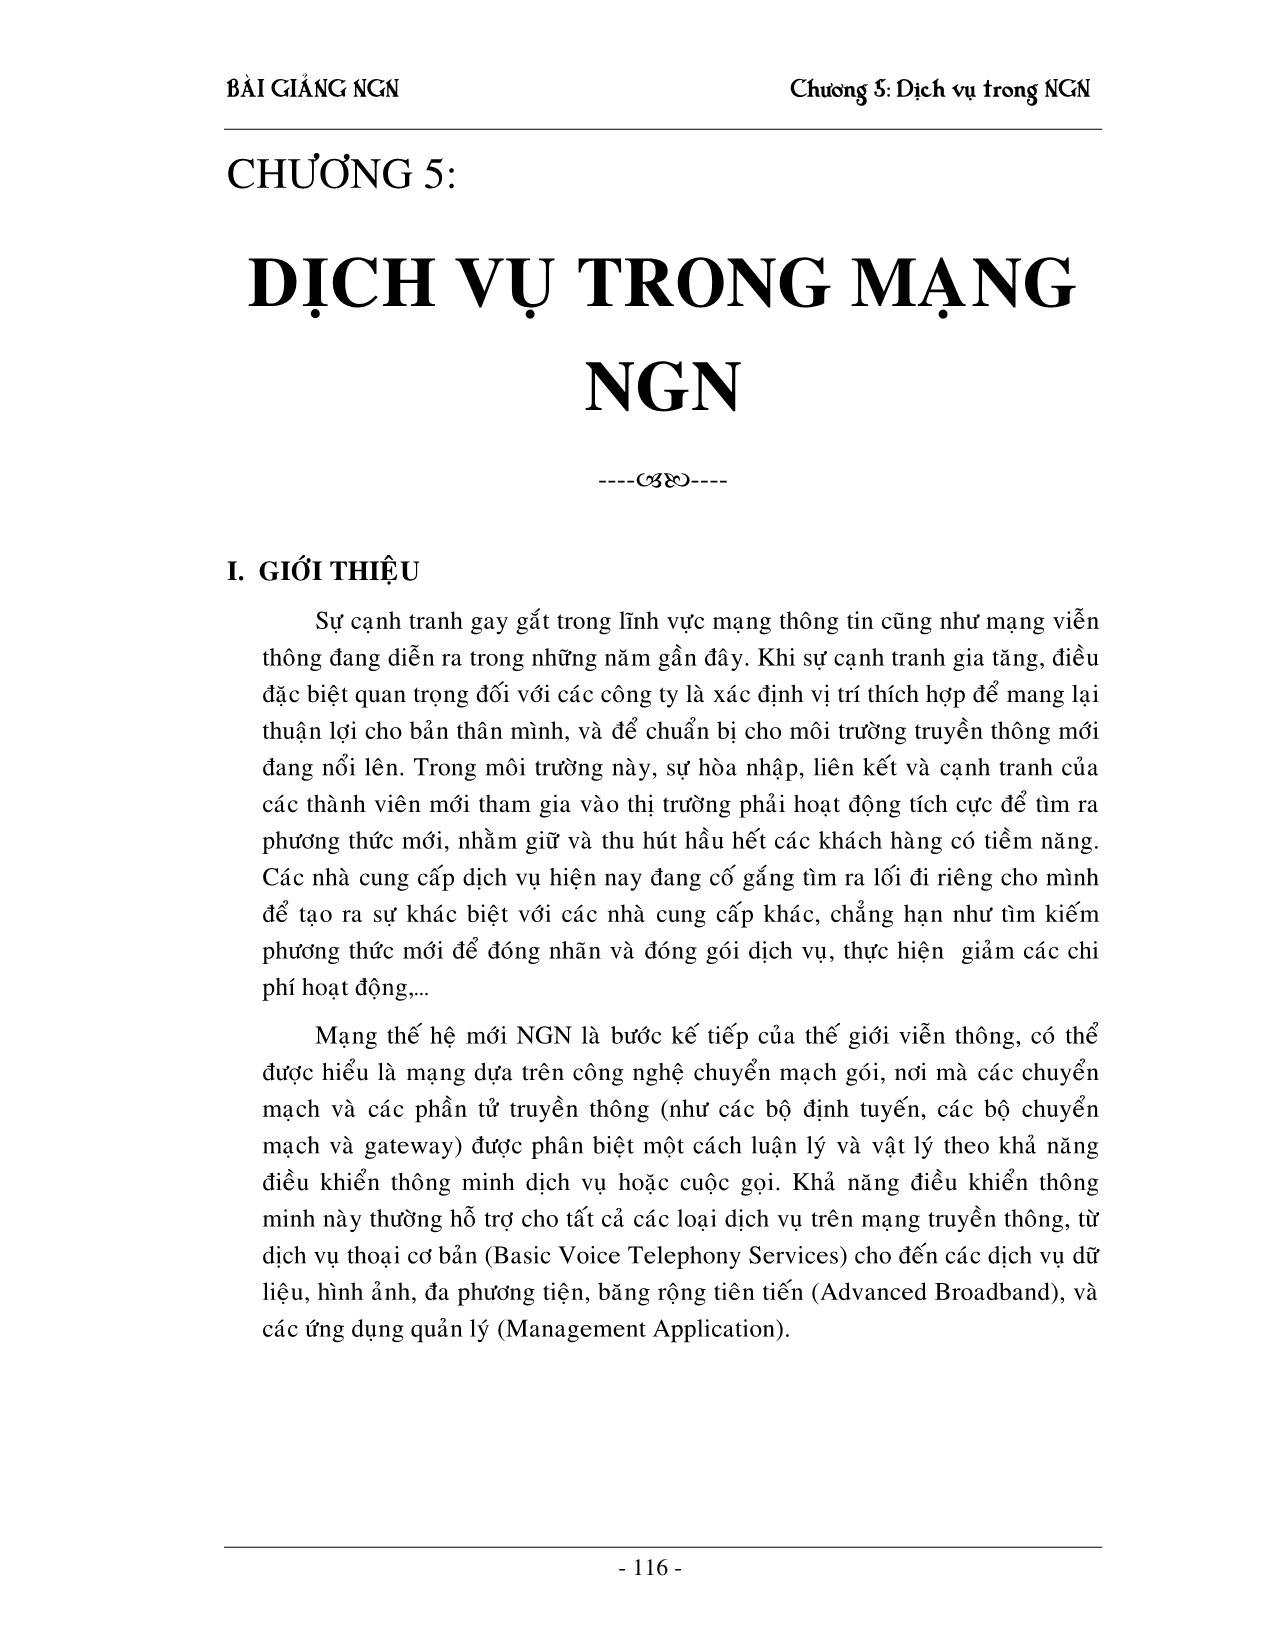 Giáo trình NGN - Chương 5: Dịch vụ trong mạng NGN trang 1